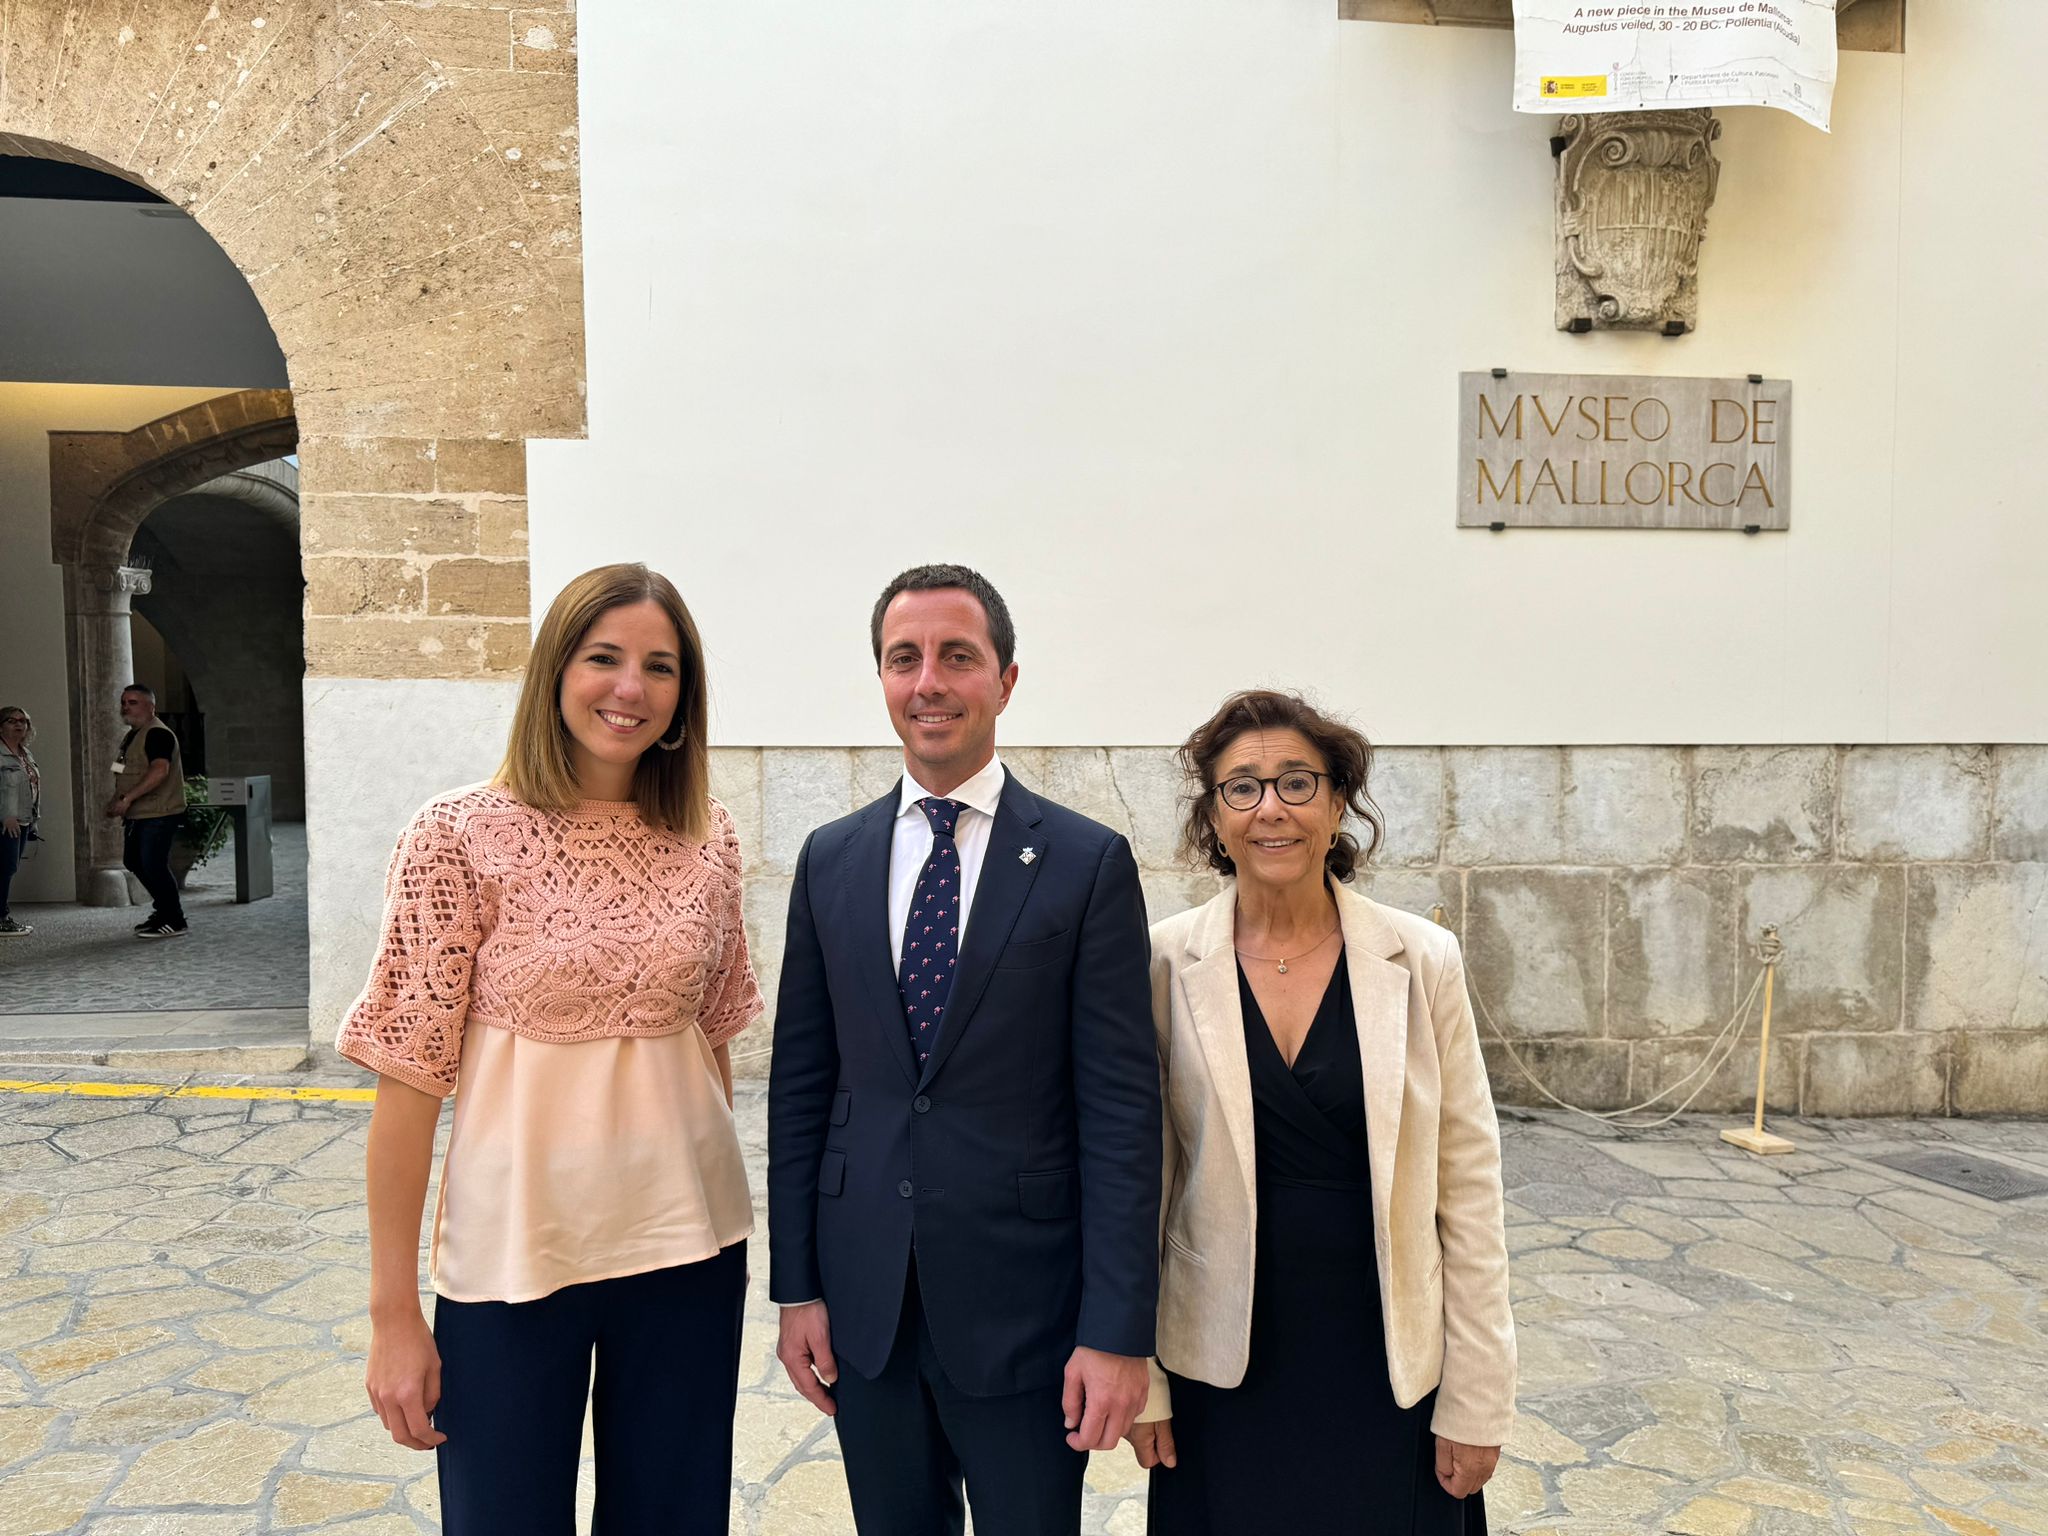 El president del Consell de Mallorca, Llorenç Galmés, amb la vicepresidenta i consellera de Cultura i Patrimoni, Antònia Roca, i la directora del Museu de Mallorca, Maria Gràcia Salvà